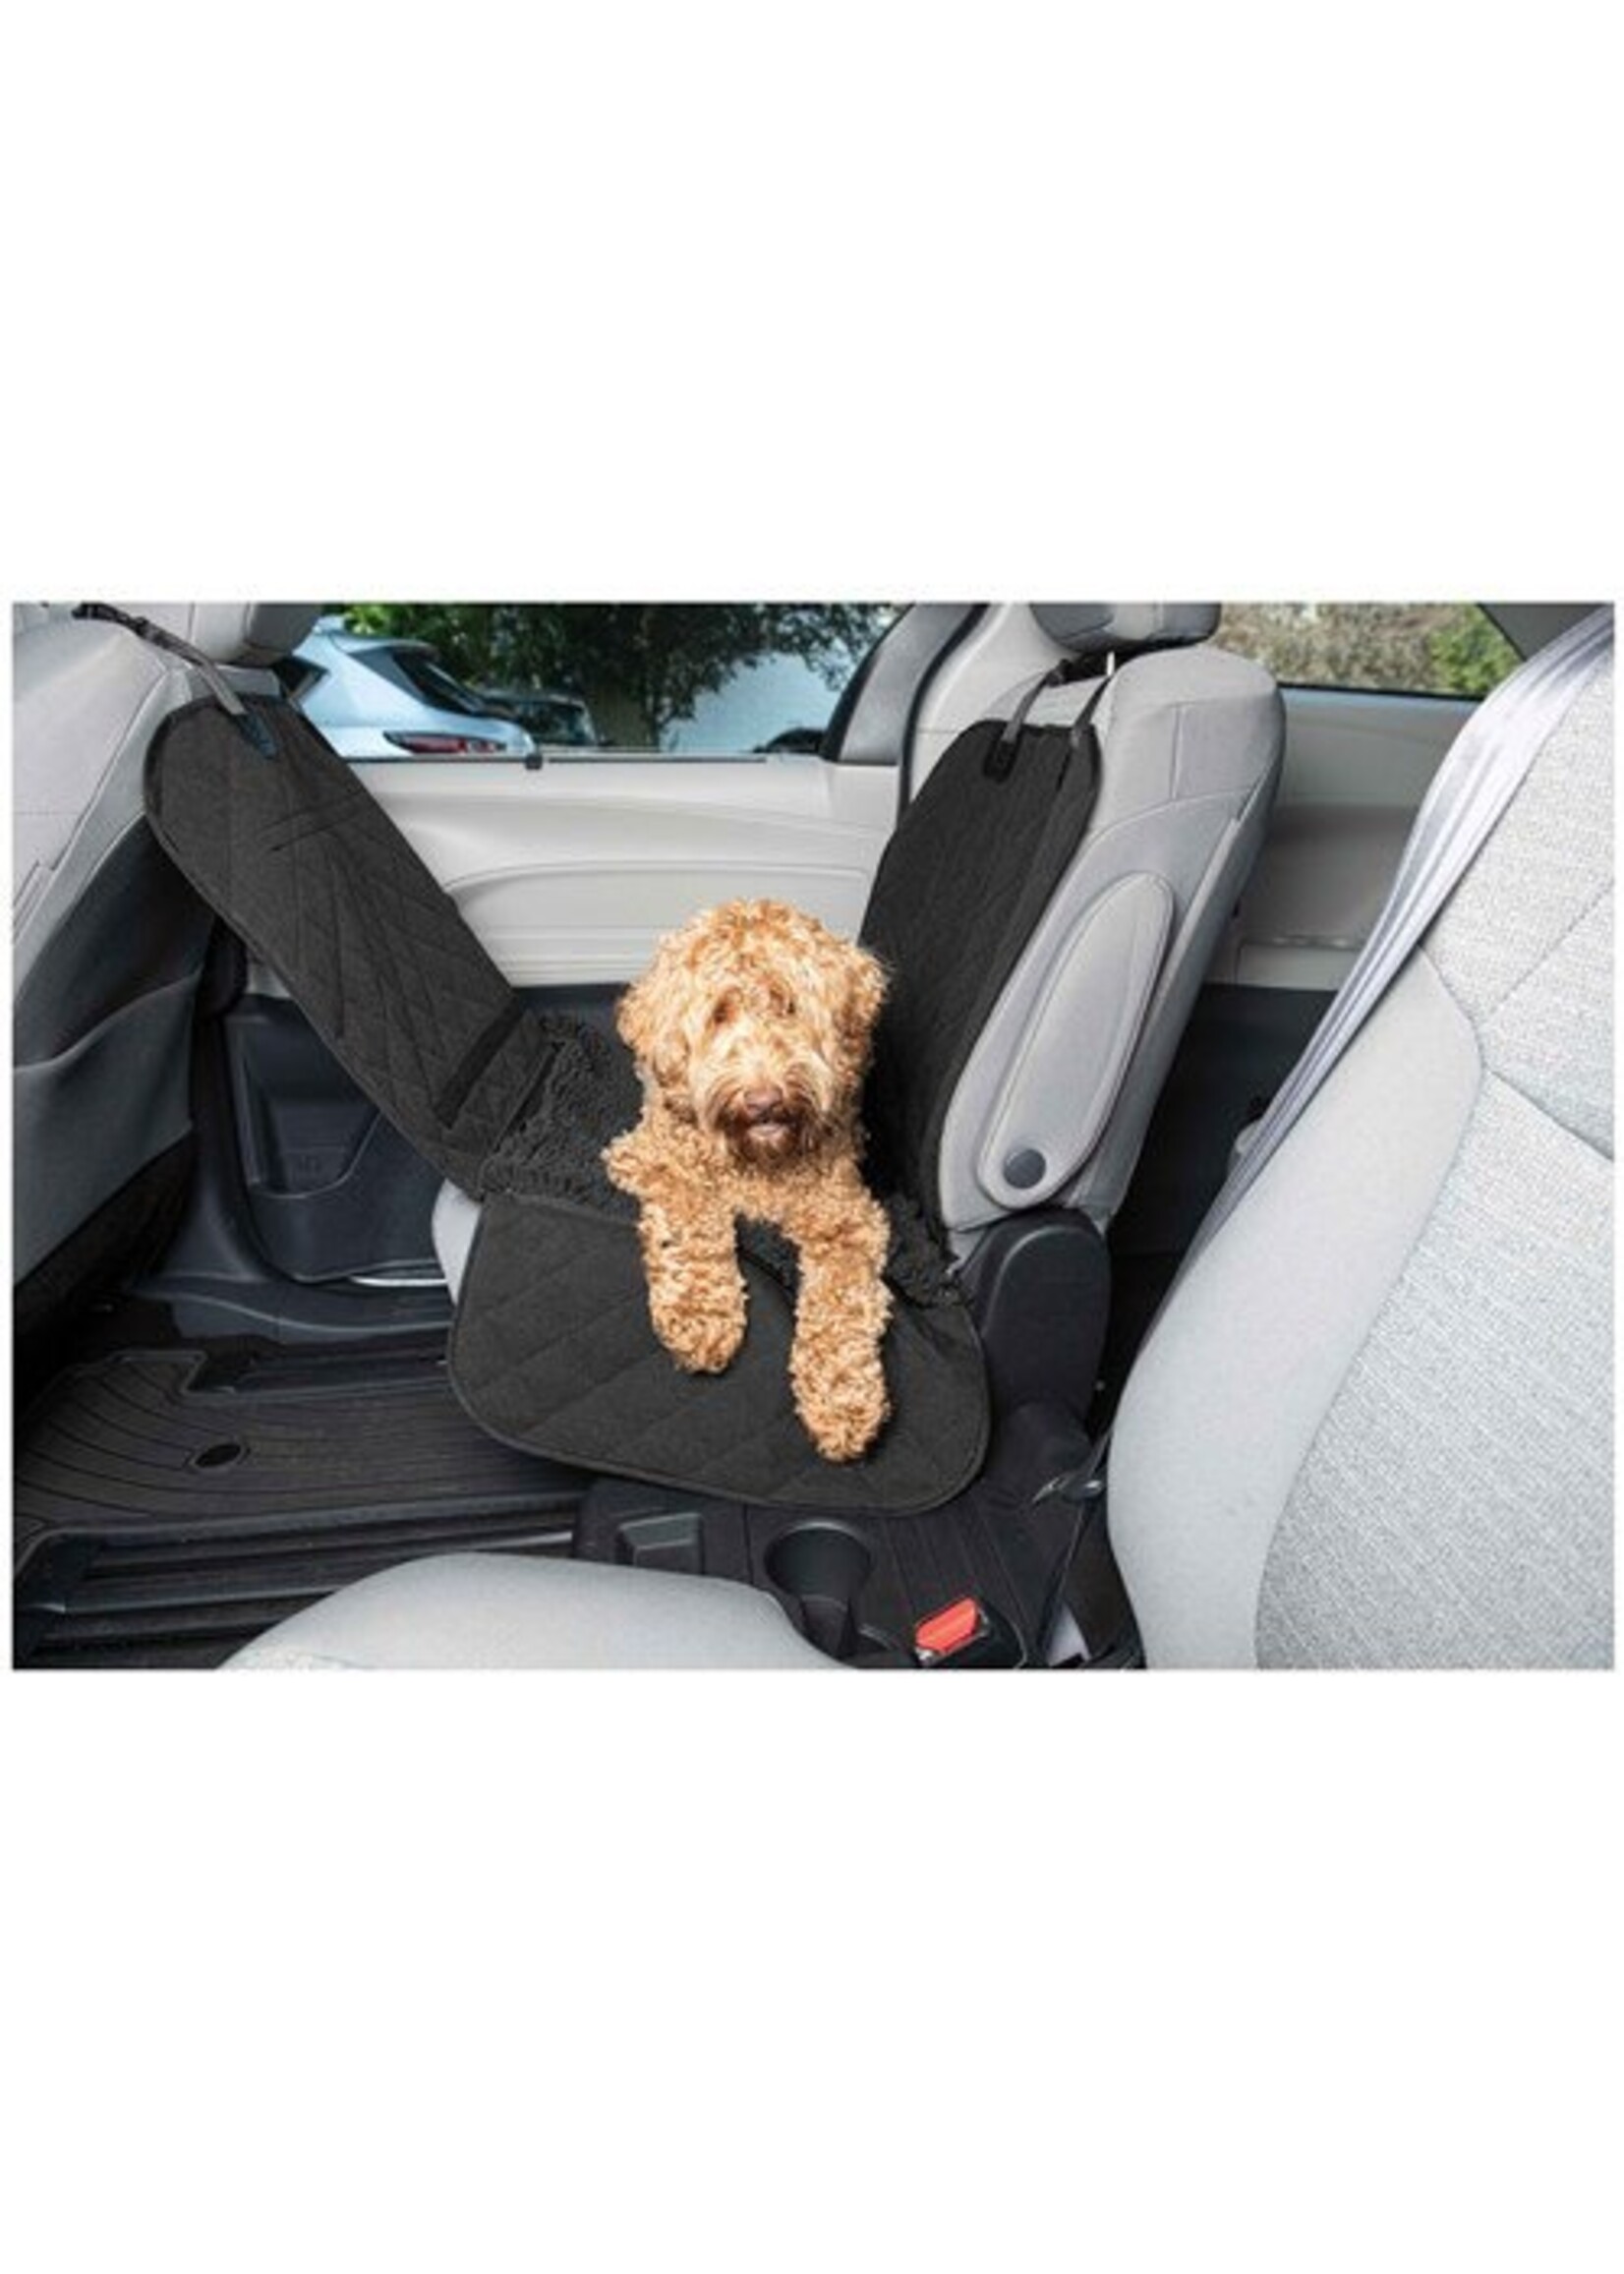 Dog Gone Smart Dog Gone Smart Single Car Seat Cover